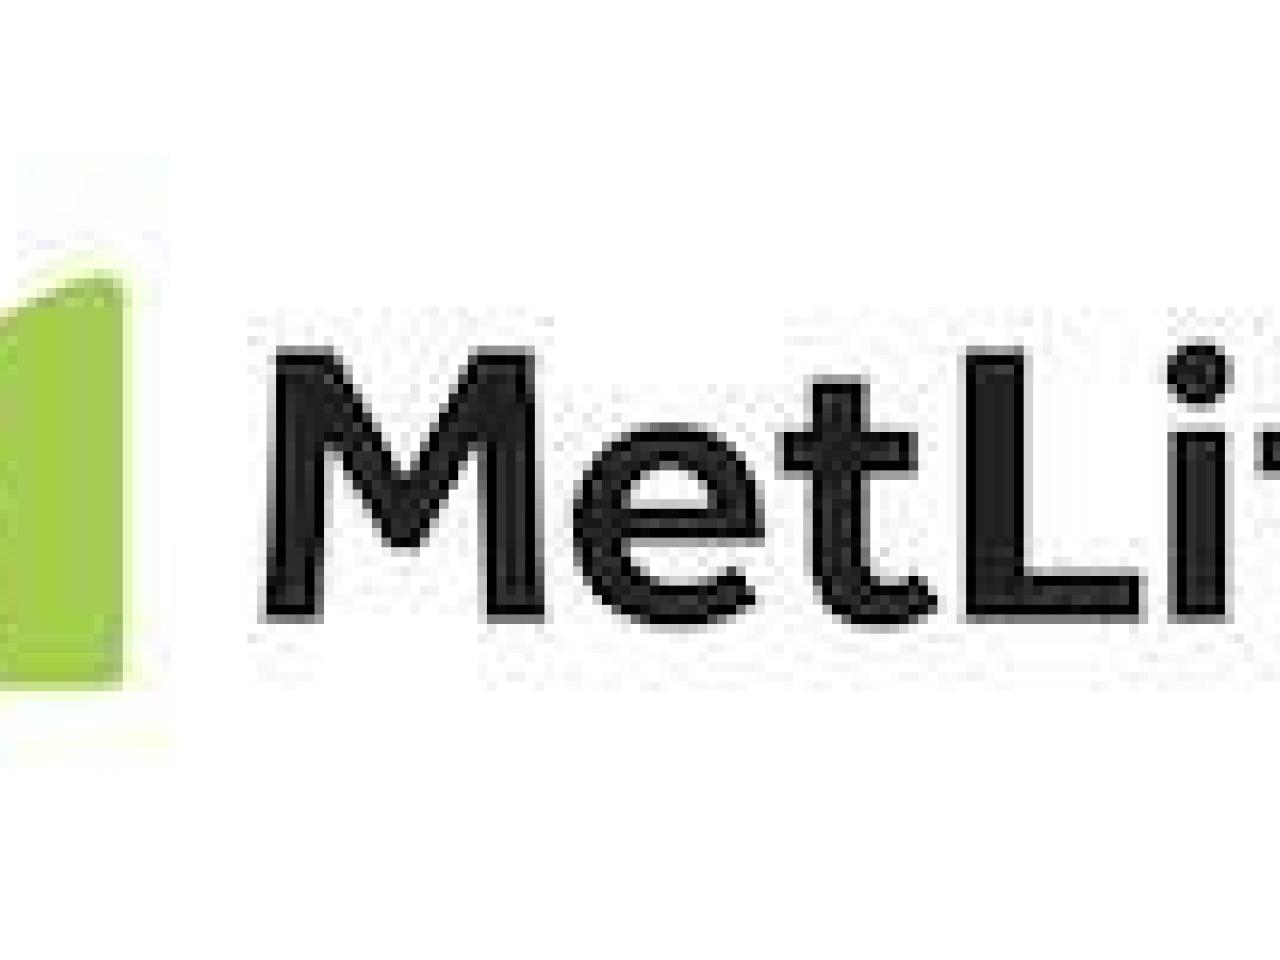 MetLife logo